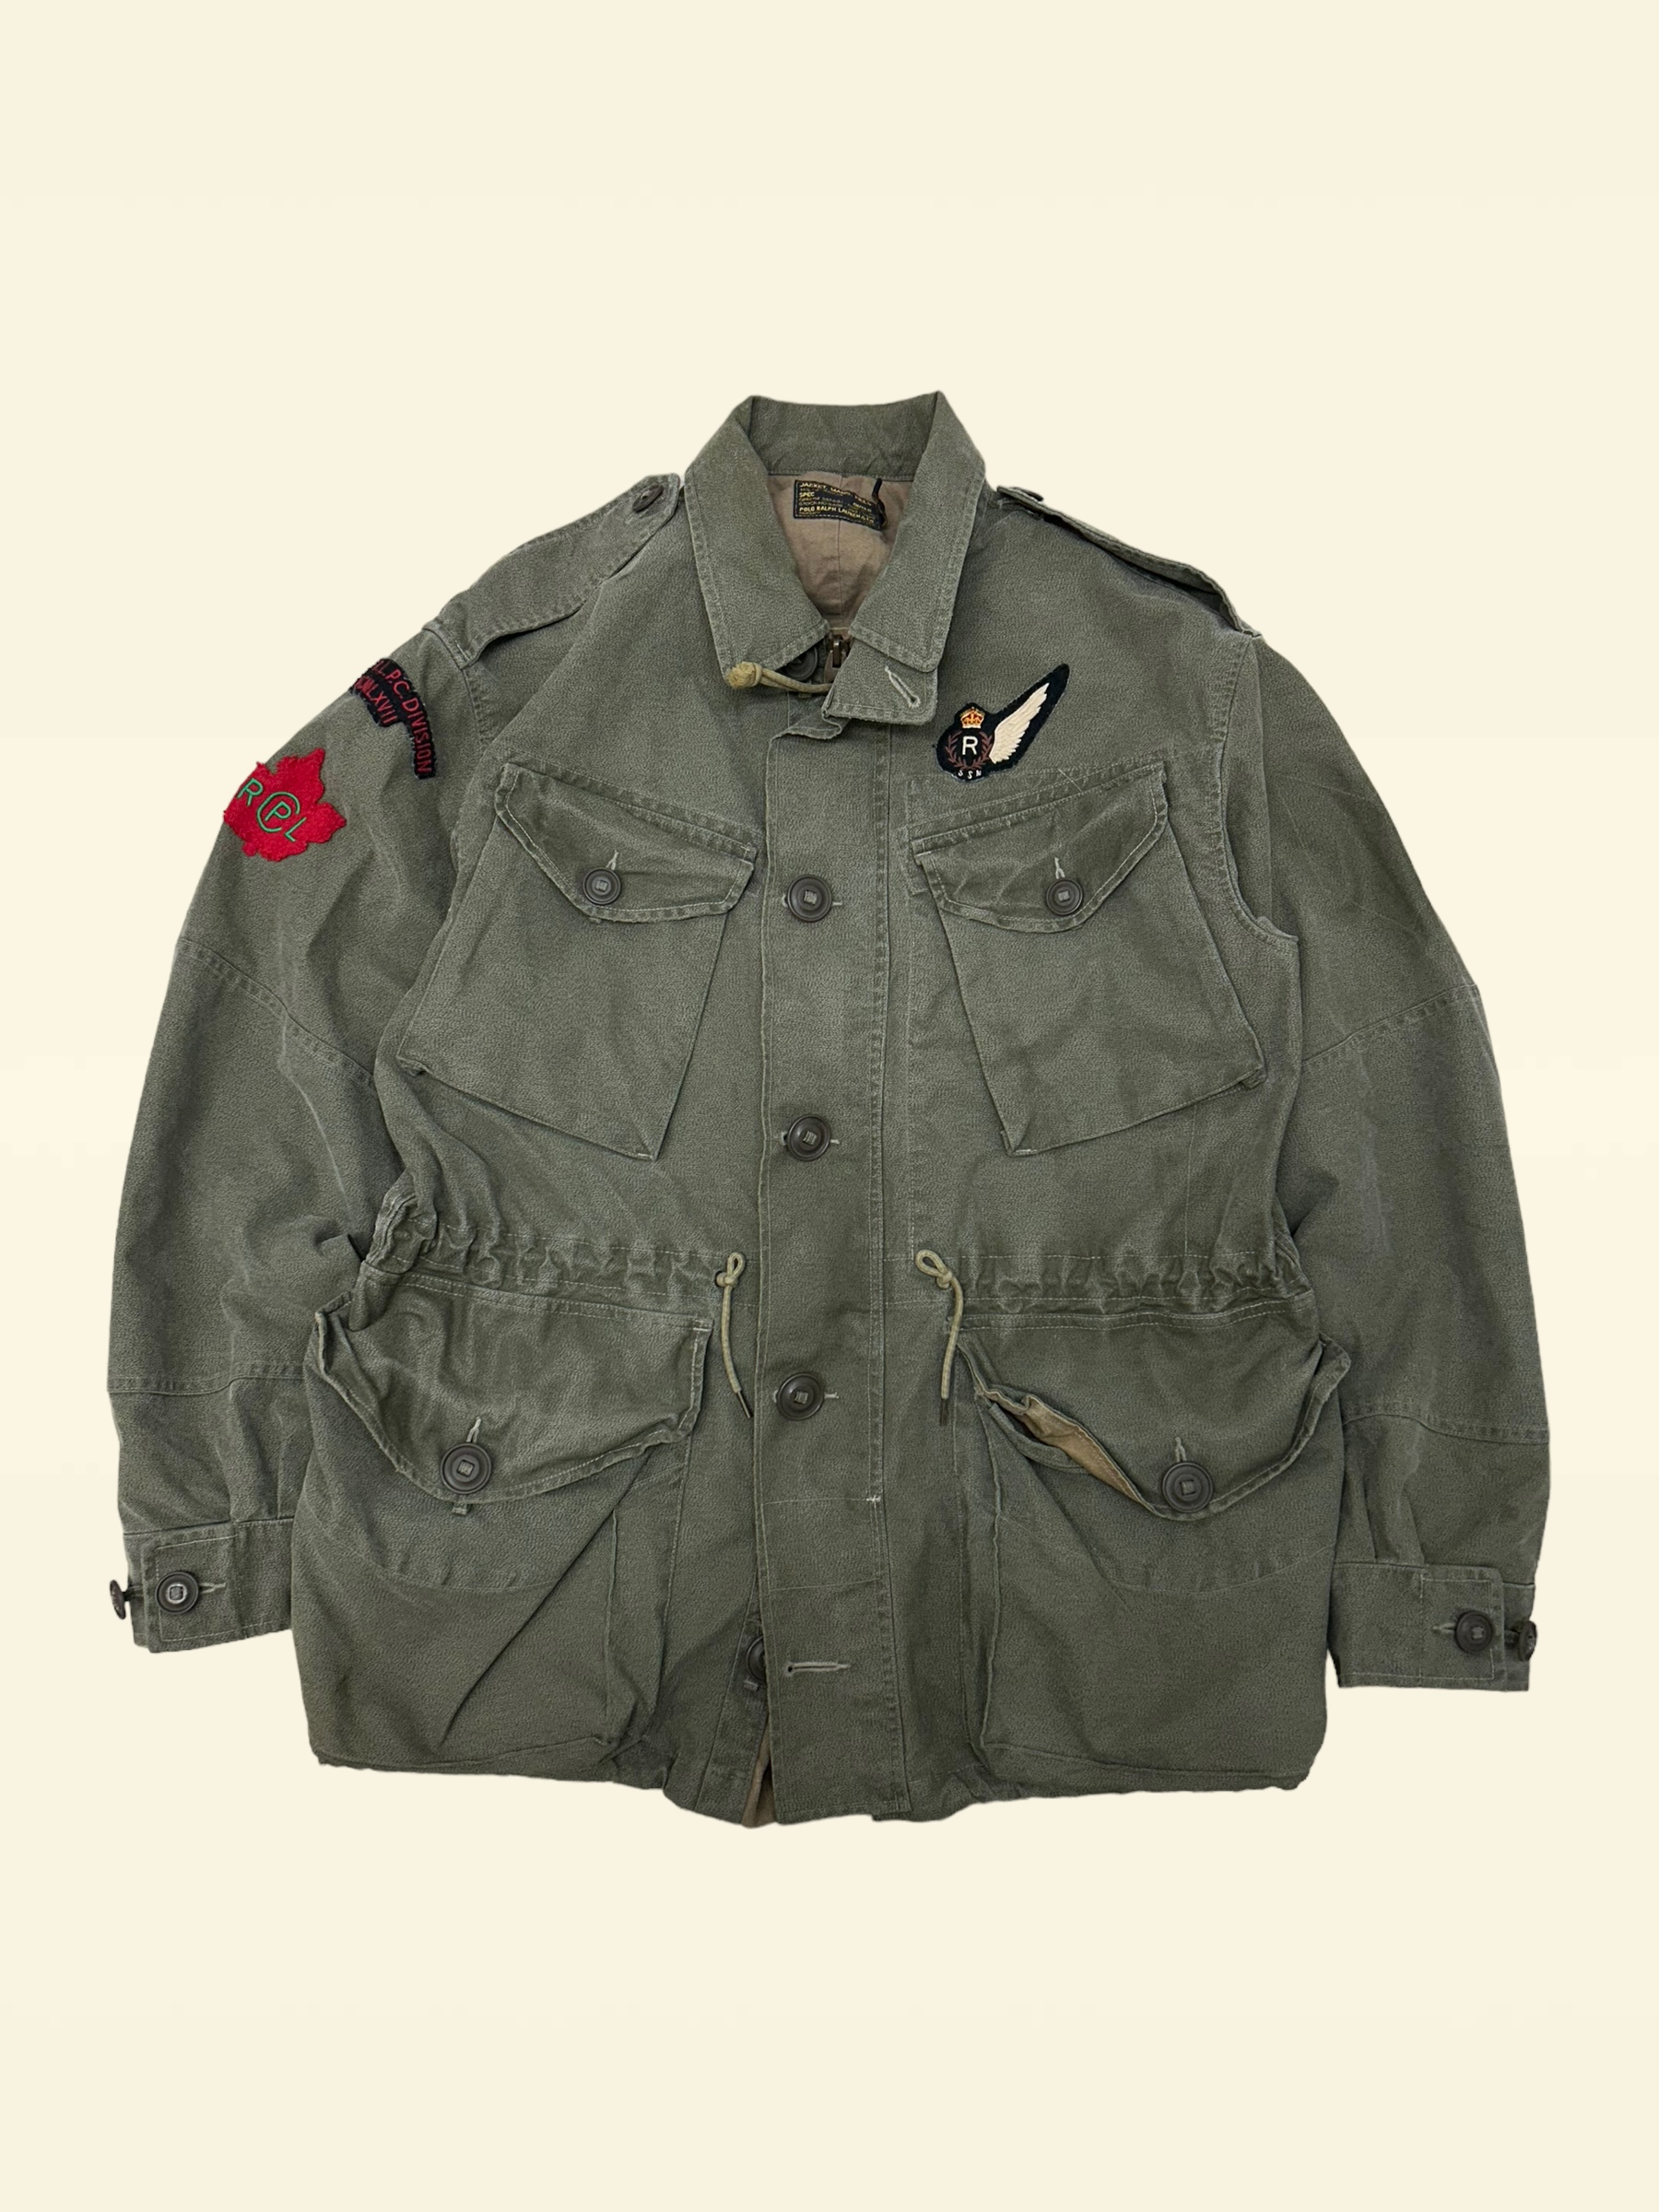 Polo ralph lauren khaki color maple patched combat jacket L